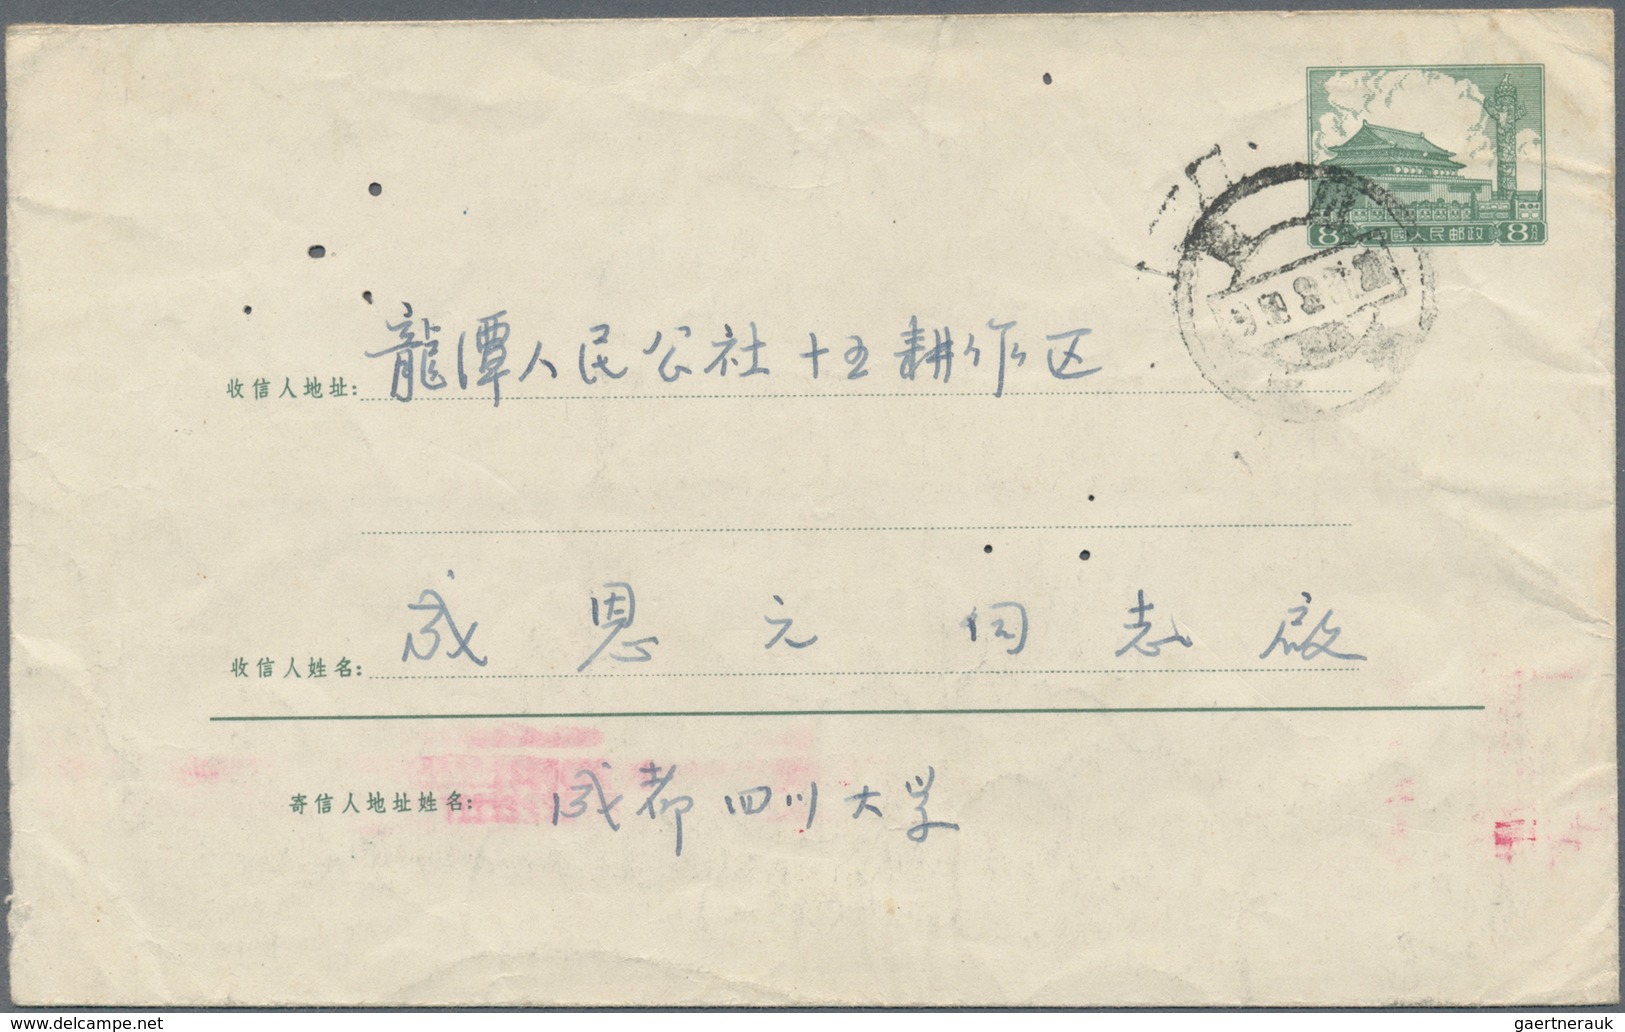 China - Volksrepublik - Ganzsachen: 1958/59, Envelope 8 F. Green (2), Imprint 6-1958 Canc. "Szechuan - Ansichtskarten